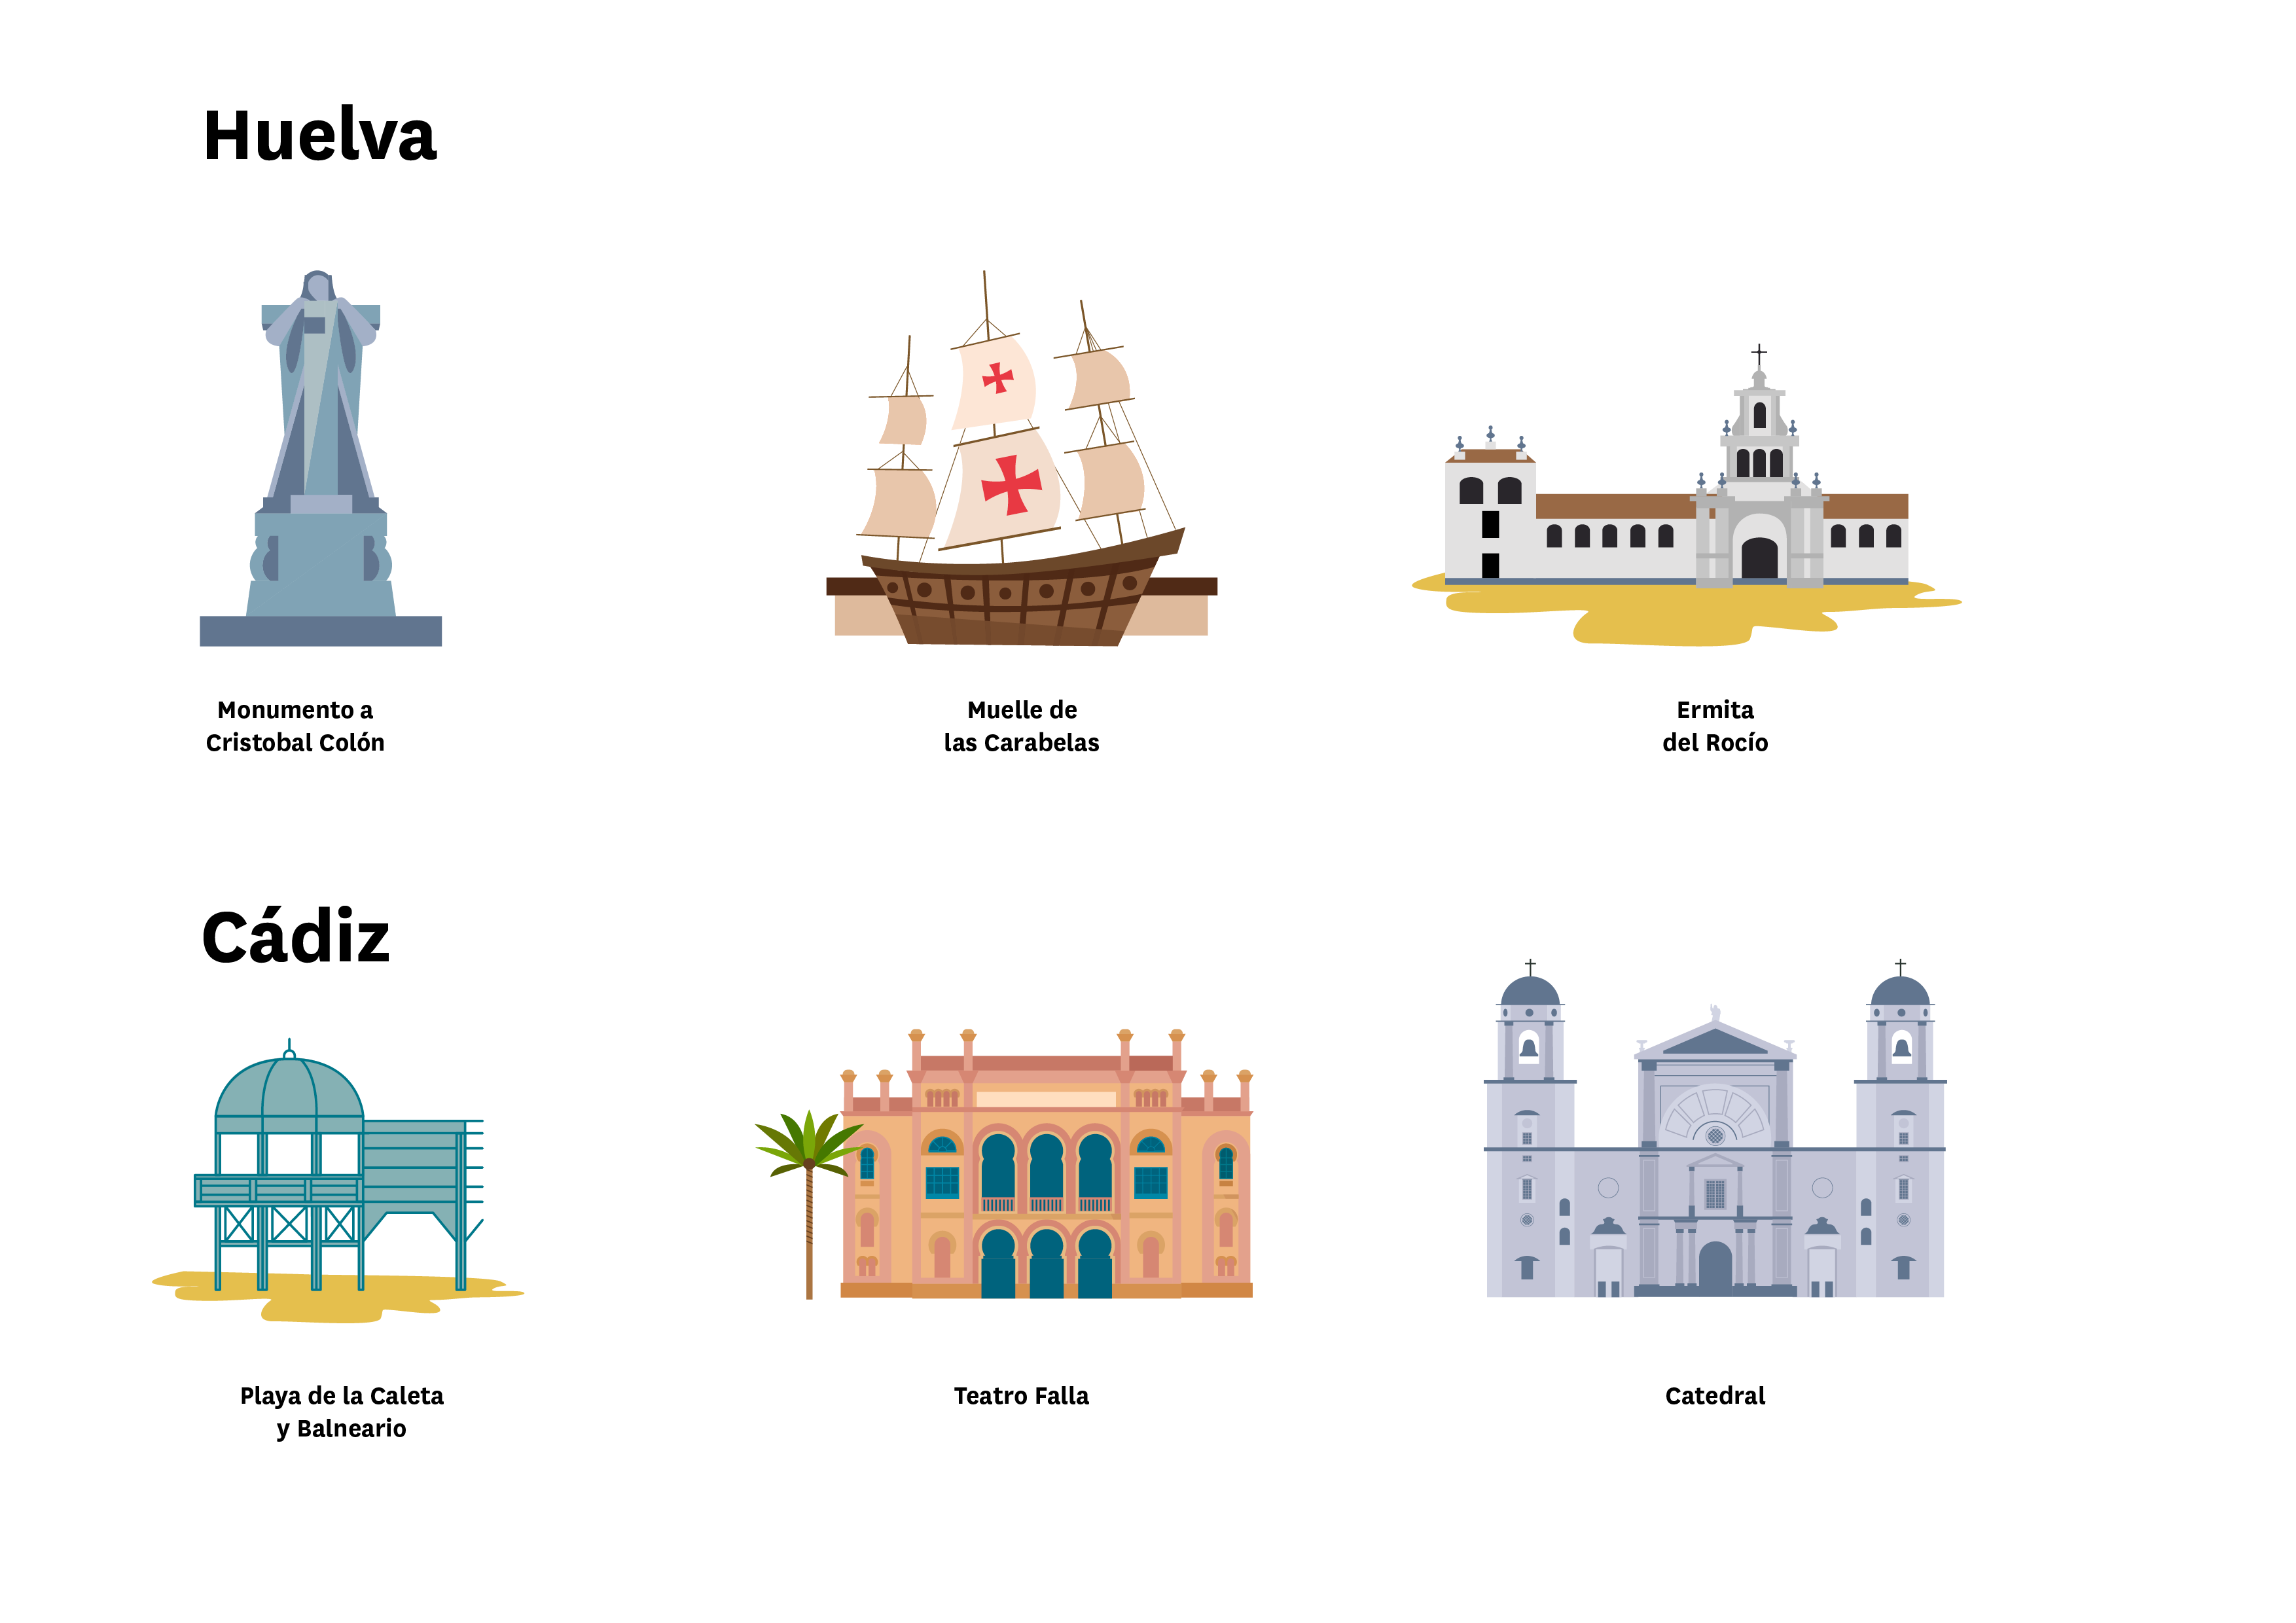 La imagen muestra localizaciones de Huelva (Monumento a Cristobal Colón, Muelle de las Carabelas y Ermita del Rocío) y Cádiz (Playa de la Caleta y Balneario, Teatro de Falla y Catedral)